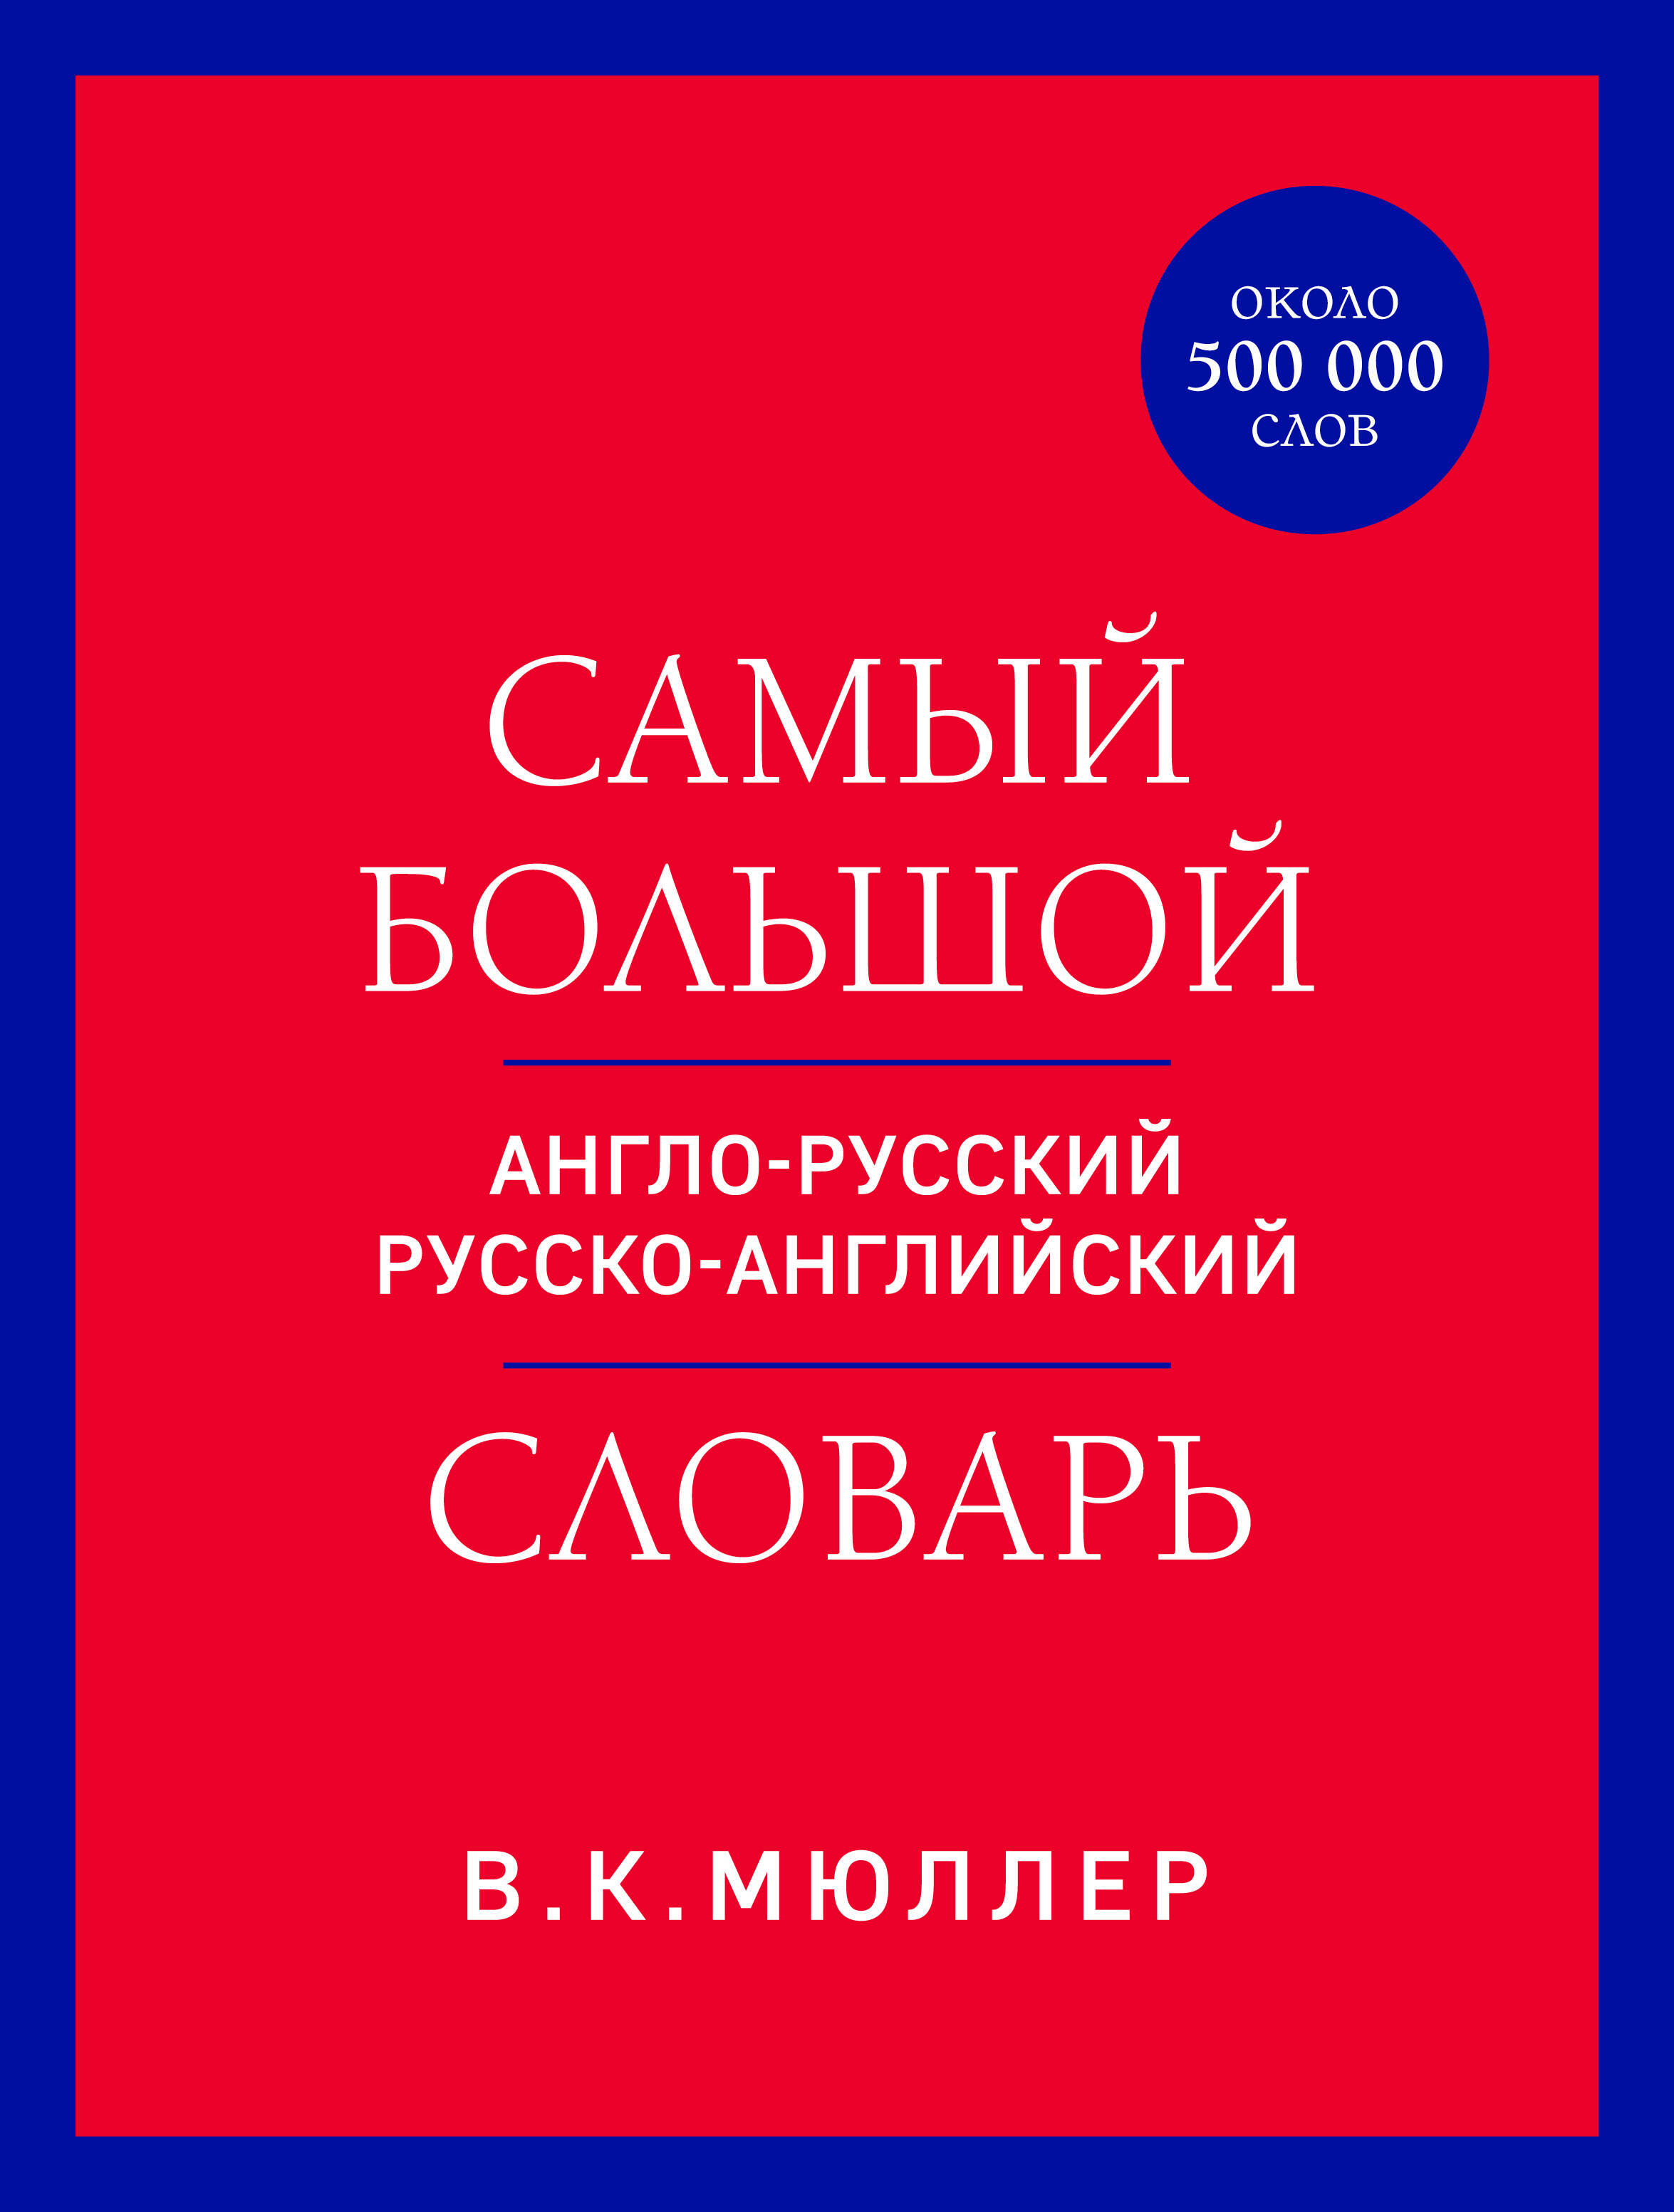 Самый большой англо-русский русско-английский словарь (около 500 000 слов)